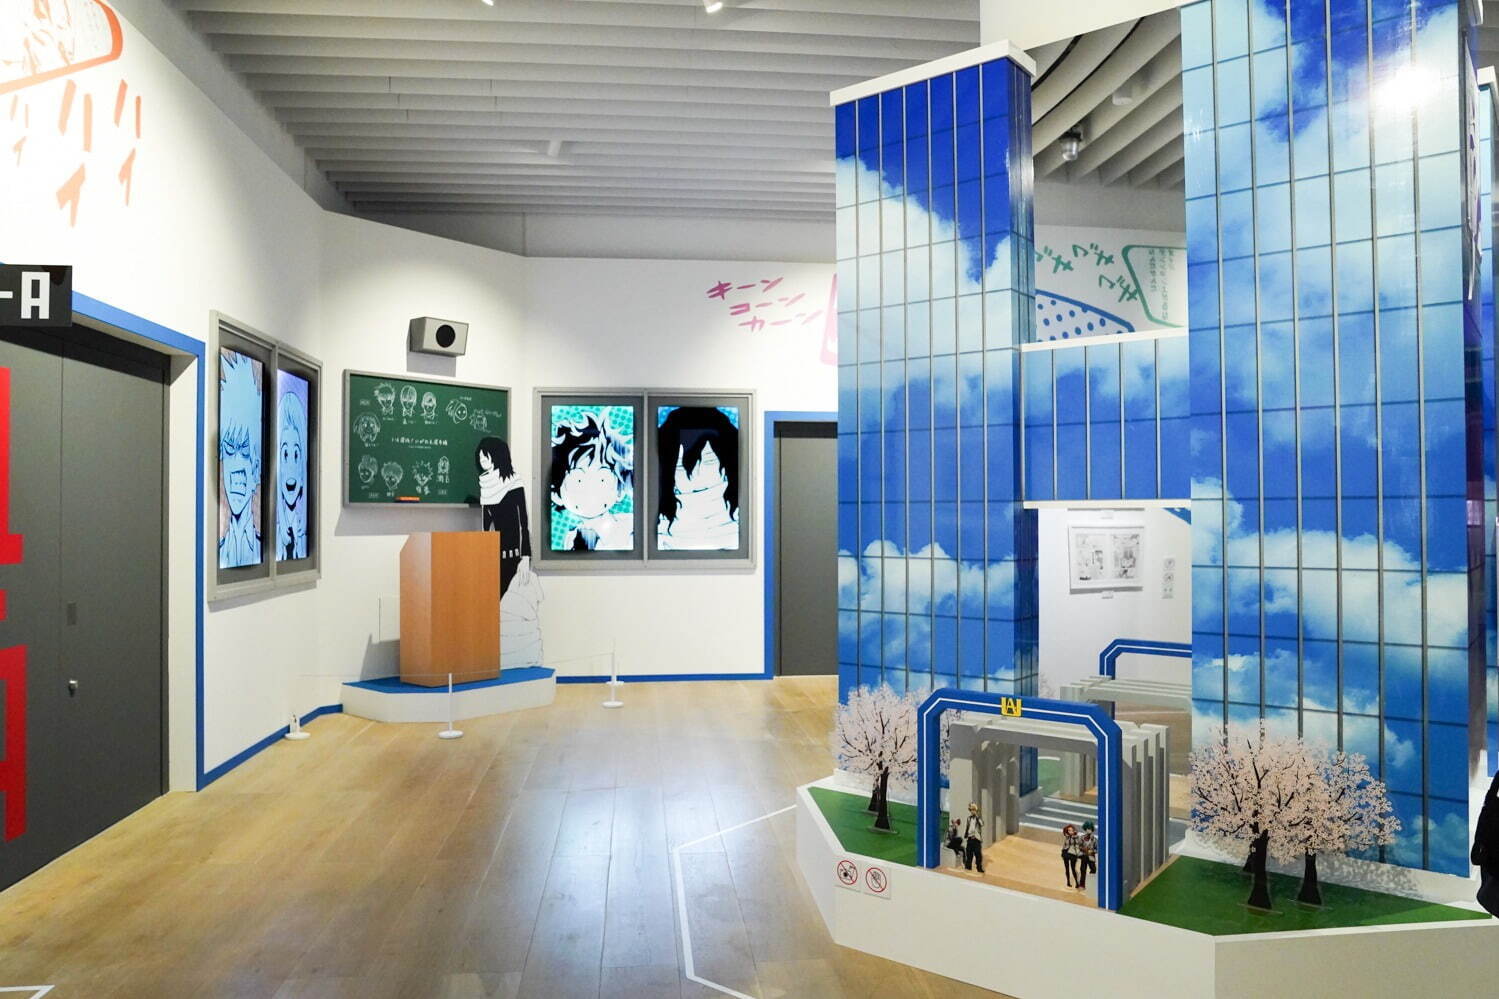 ※画像は東京会場の展示の様子。大阪会場は画像と異なる場合あり。